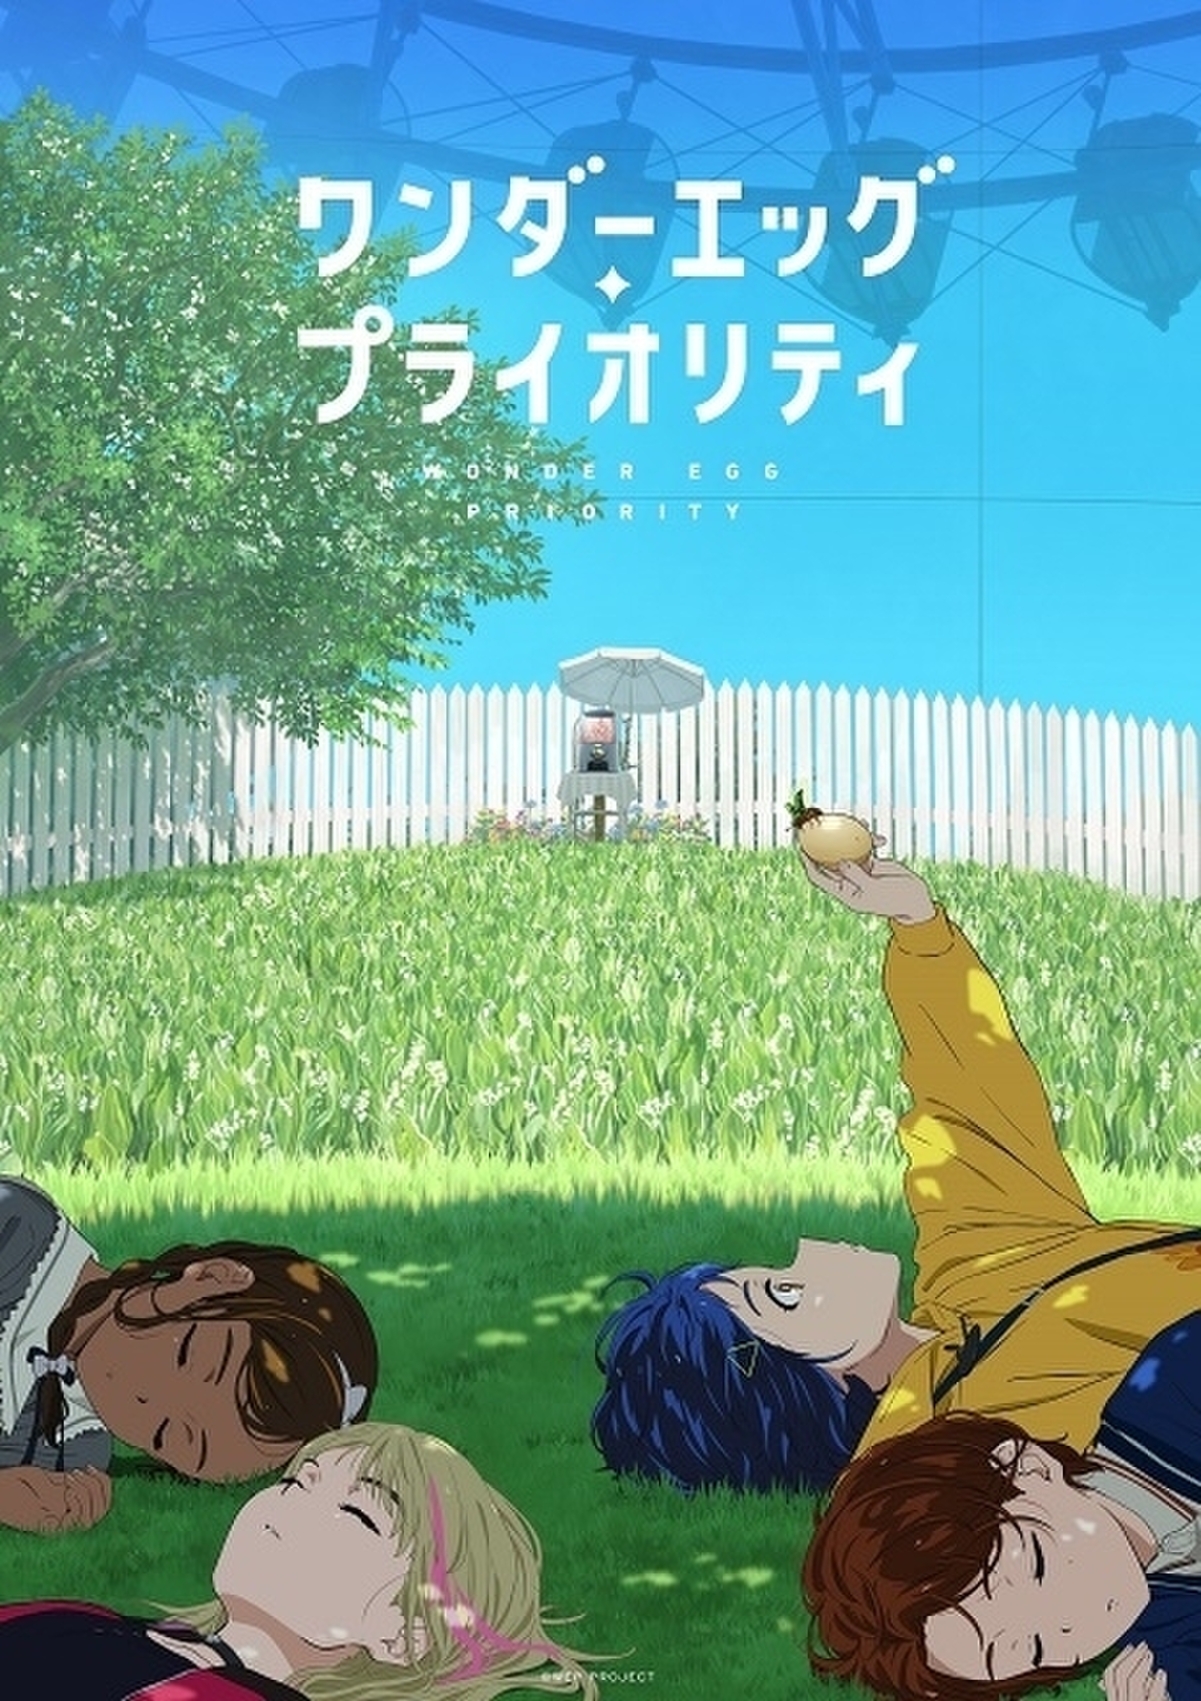 野島伸司脚本のアニメ「ワンダーエッグ・プライオリティ」1月12日放送